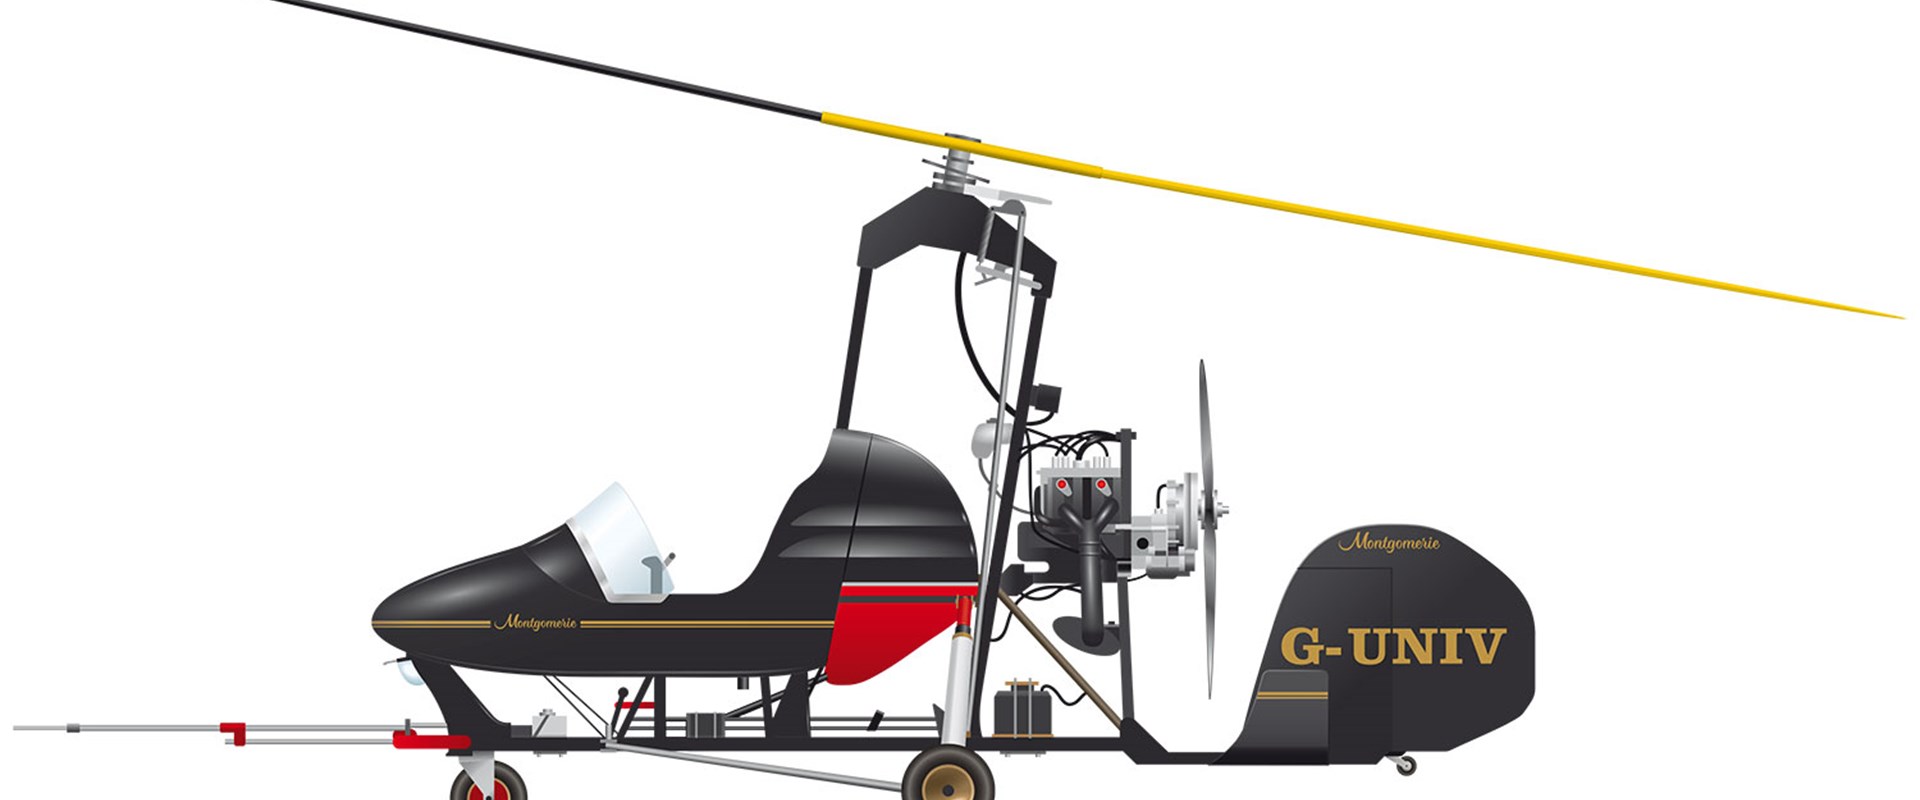 A black Montgomerie-Parsons autogyro. 